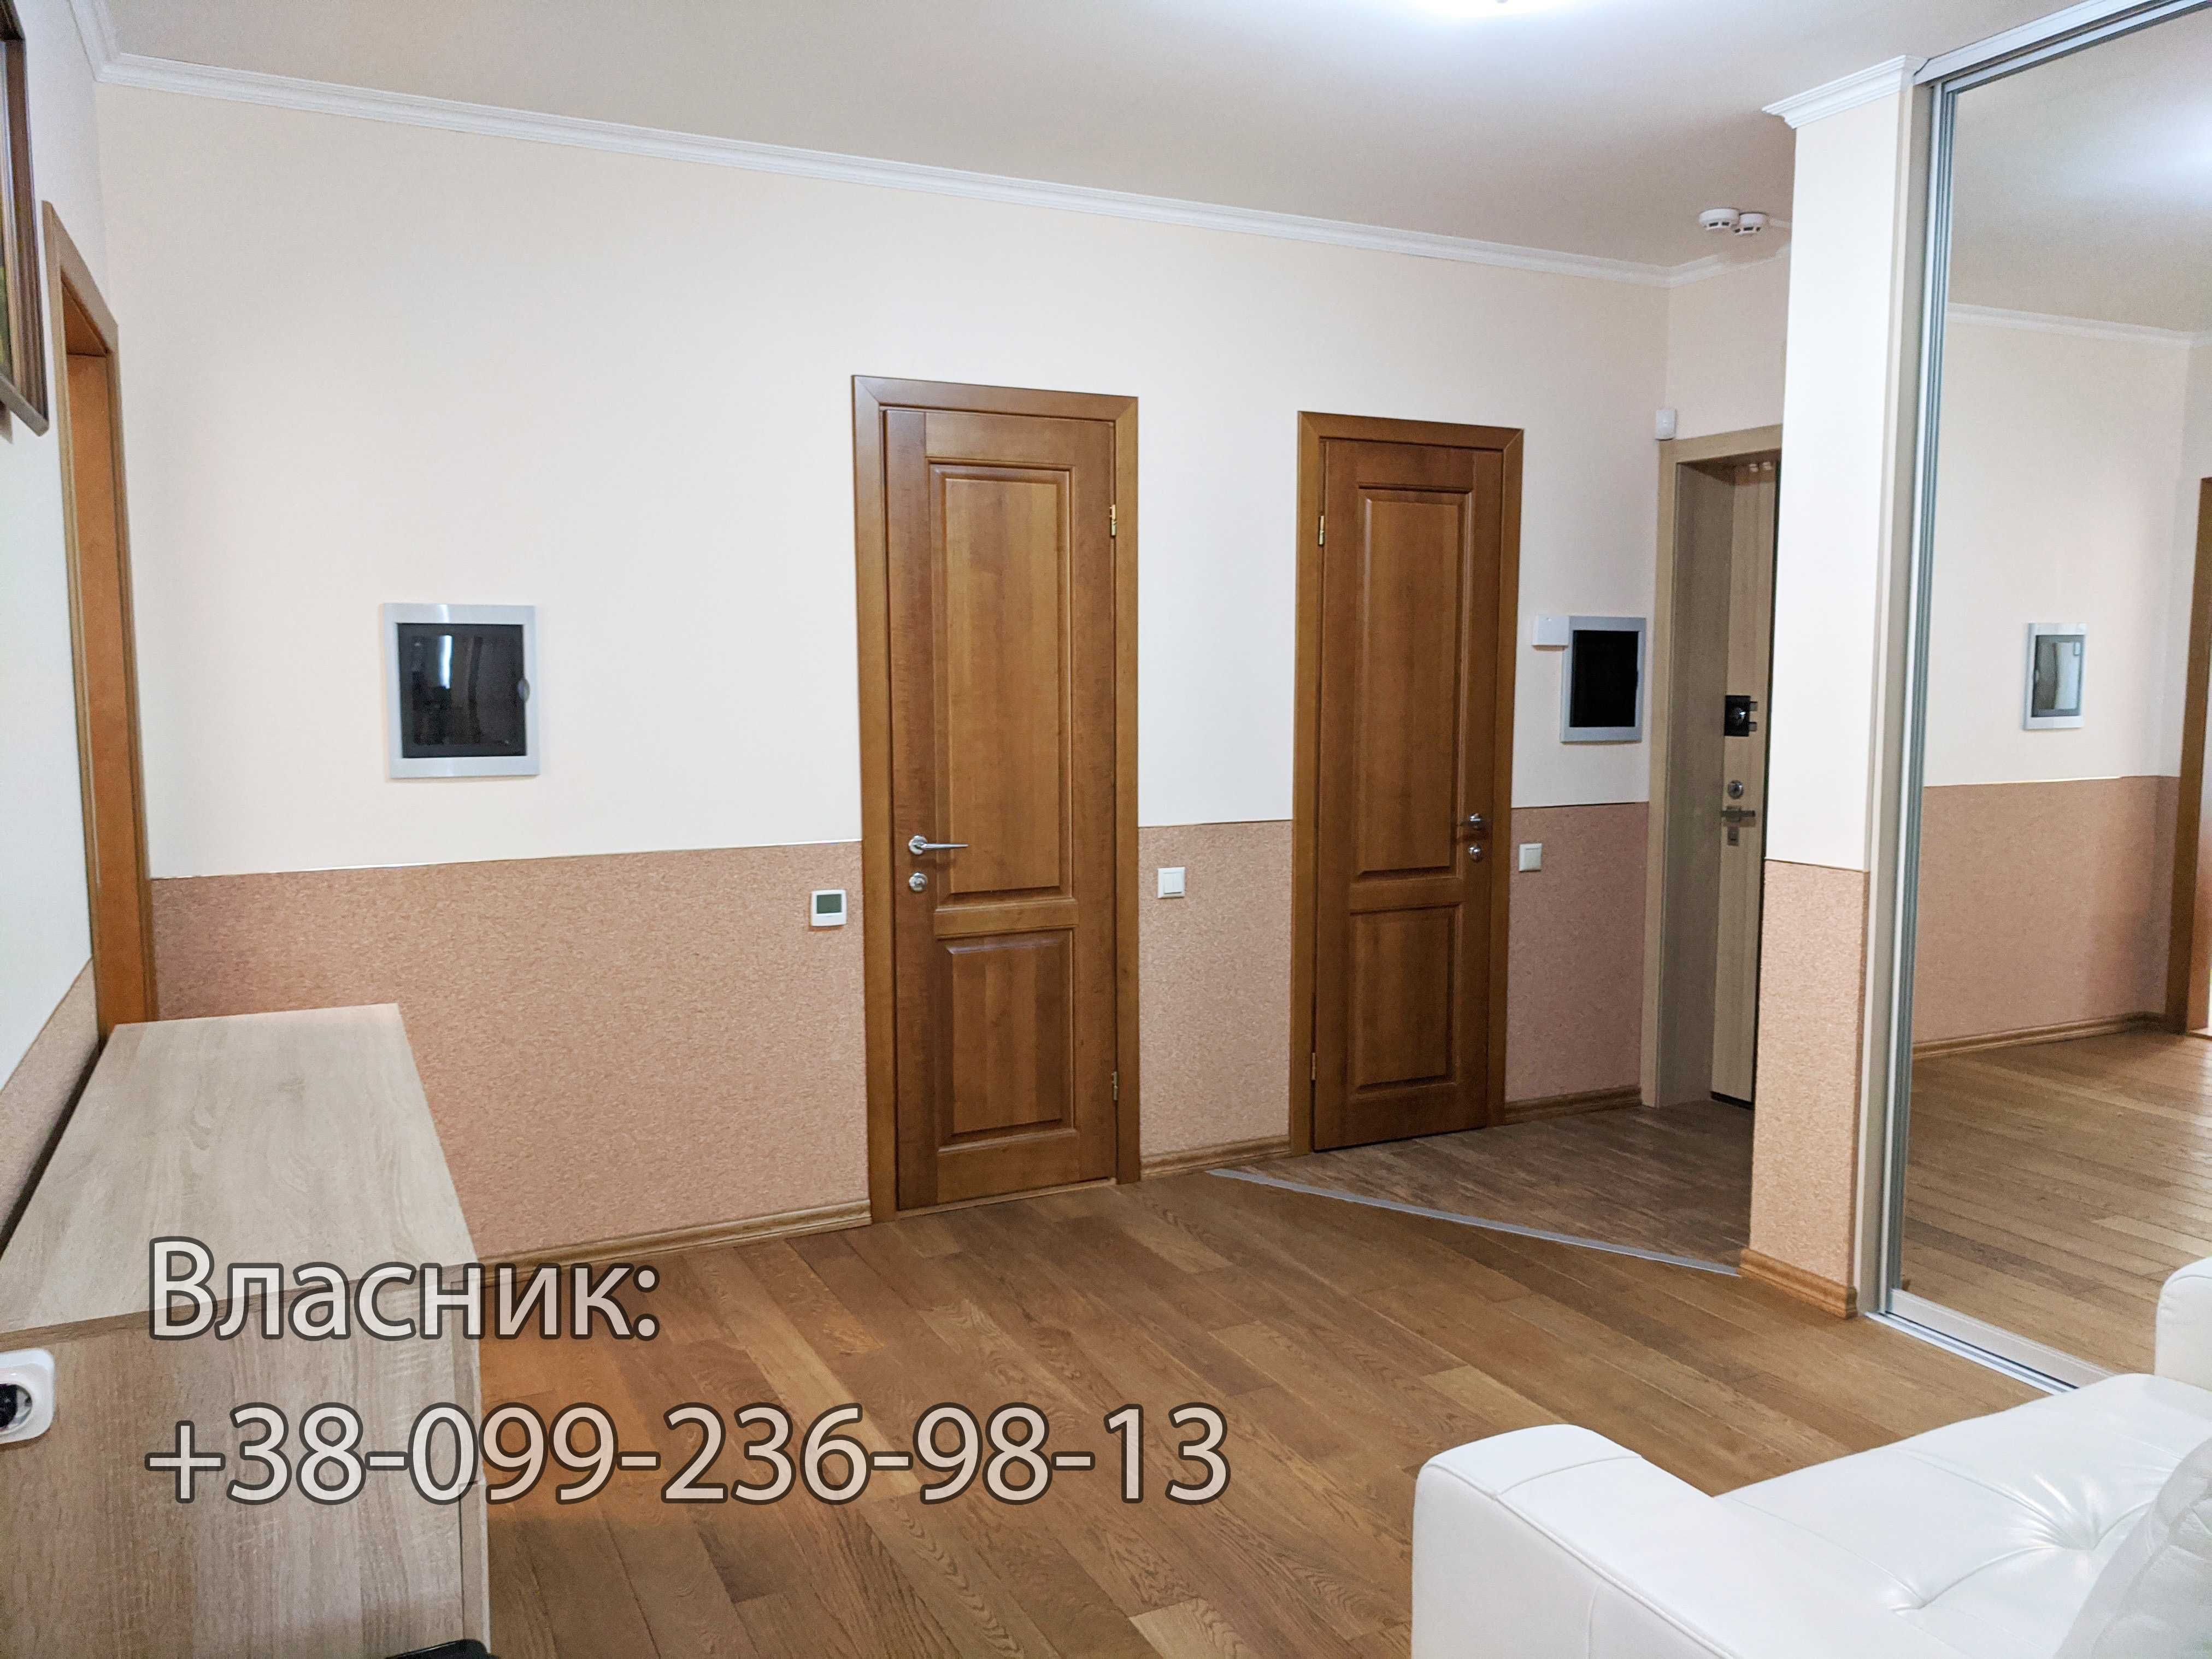 3 кімн. квартира по вул. П. Калнишевського, 7. Мінський масив. Без %